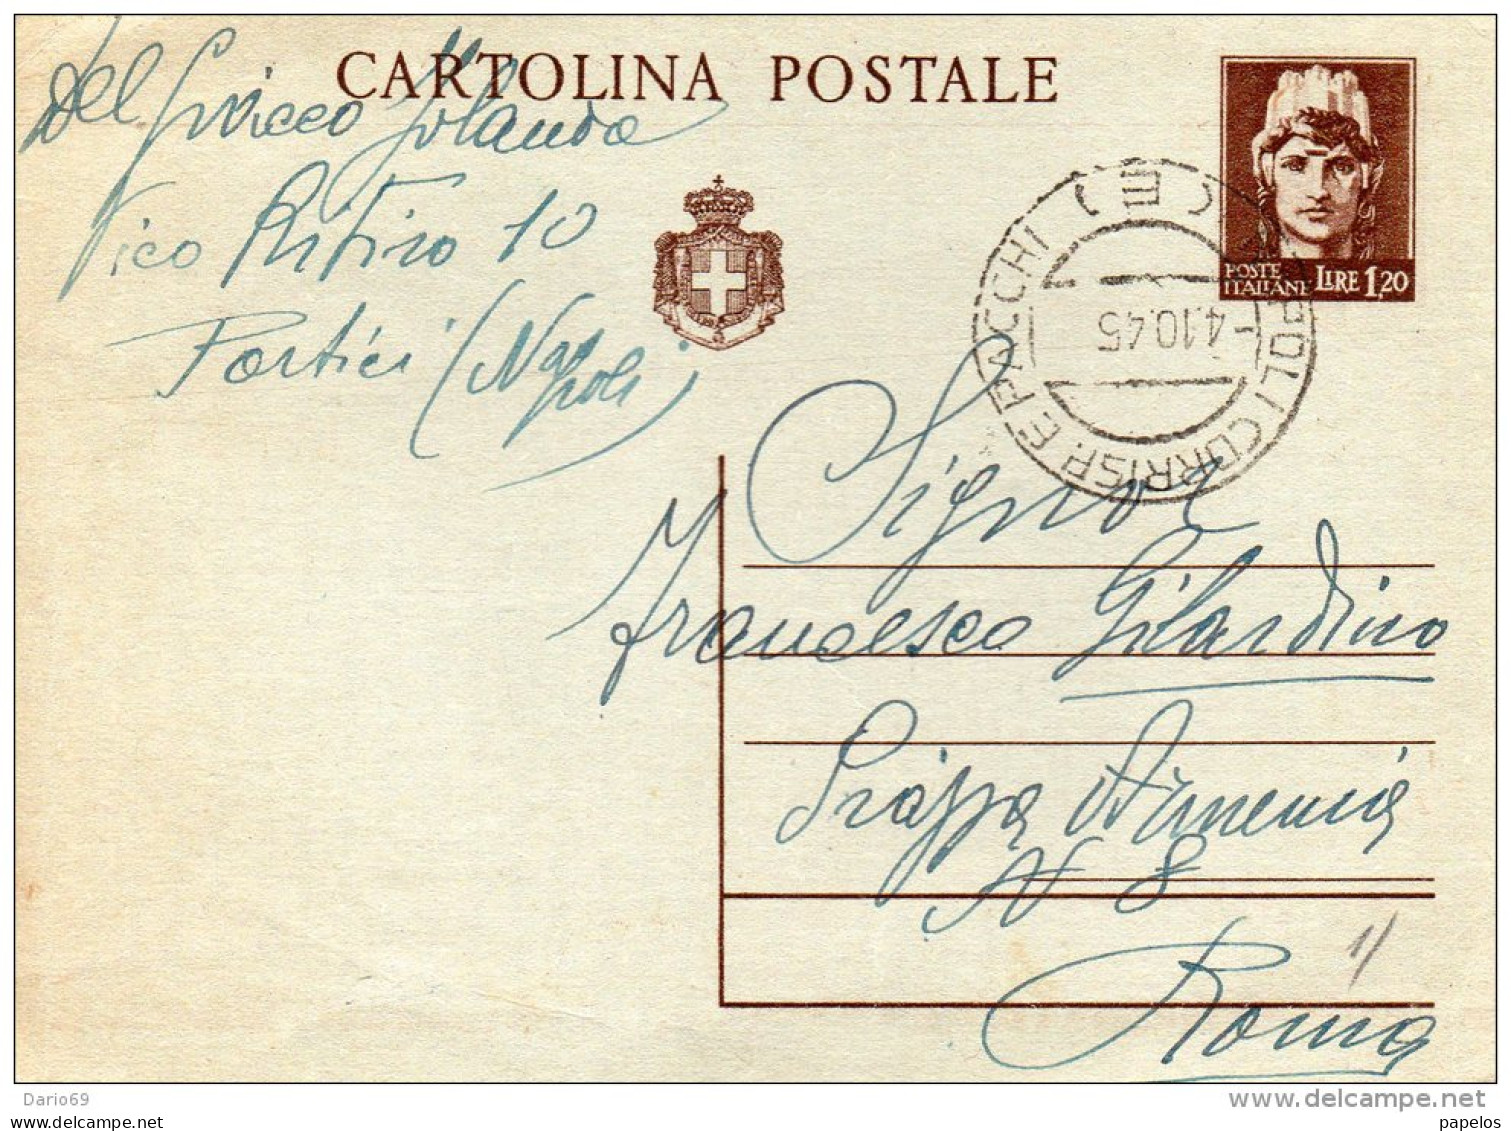 1945 CARTOLINA CON ANNULLO NAPOLI - Stamped Stationery